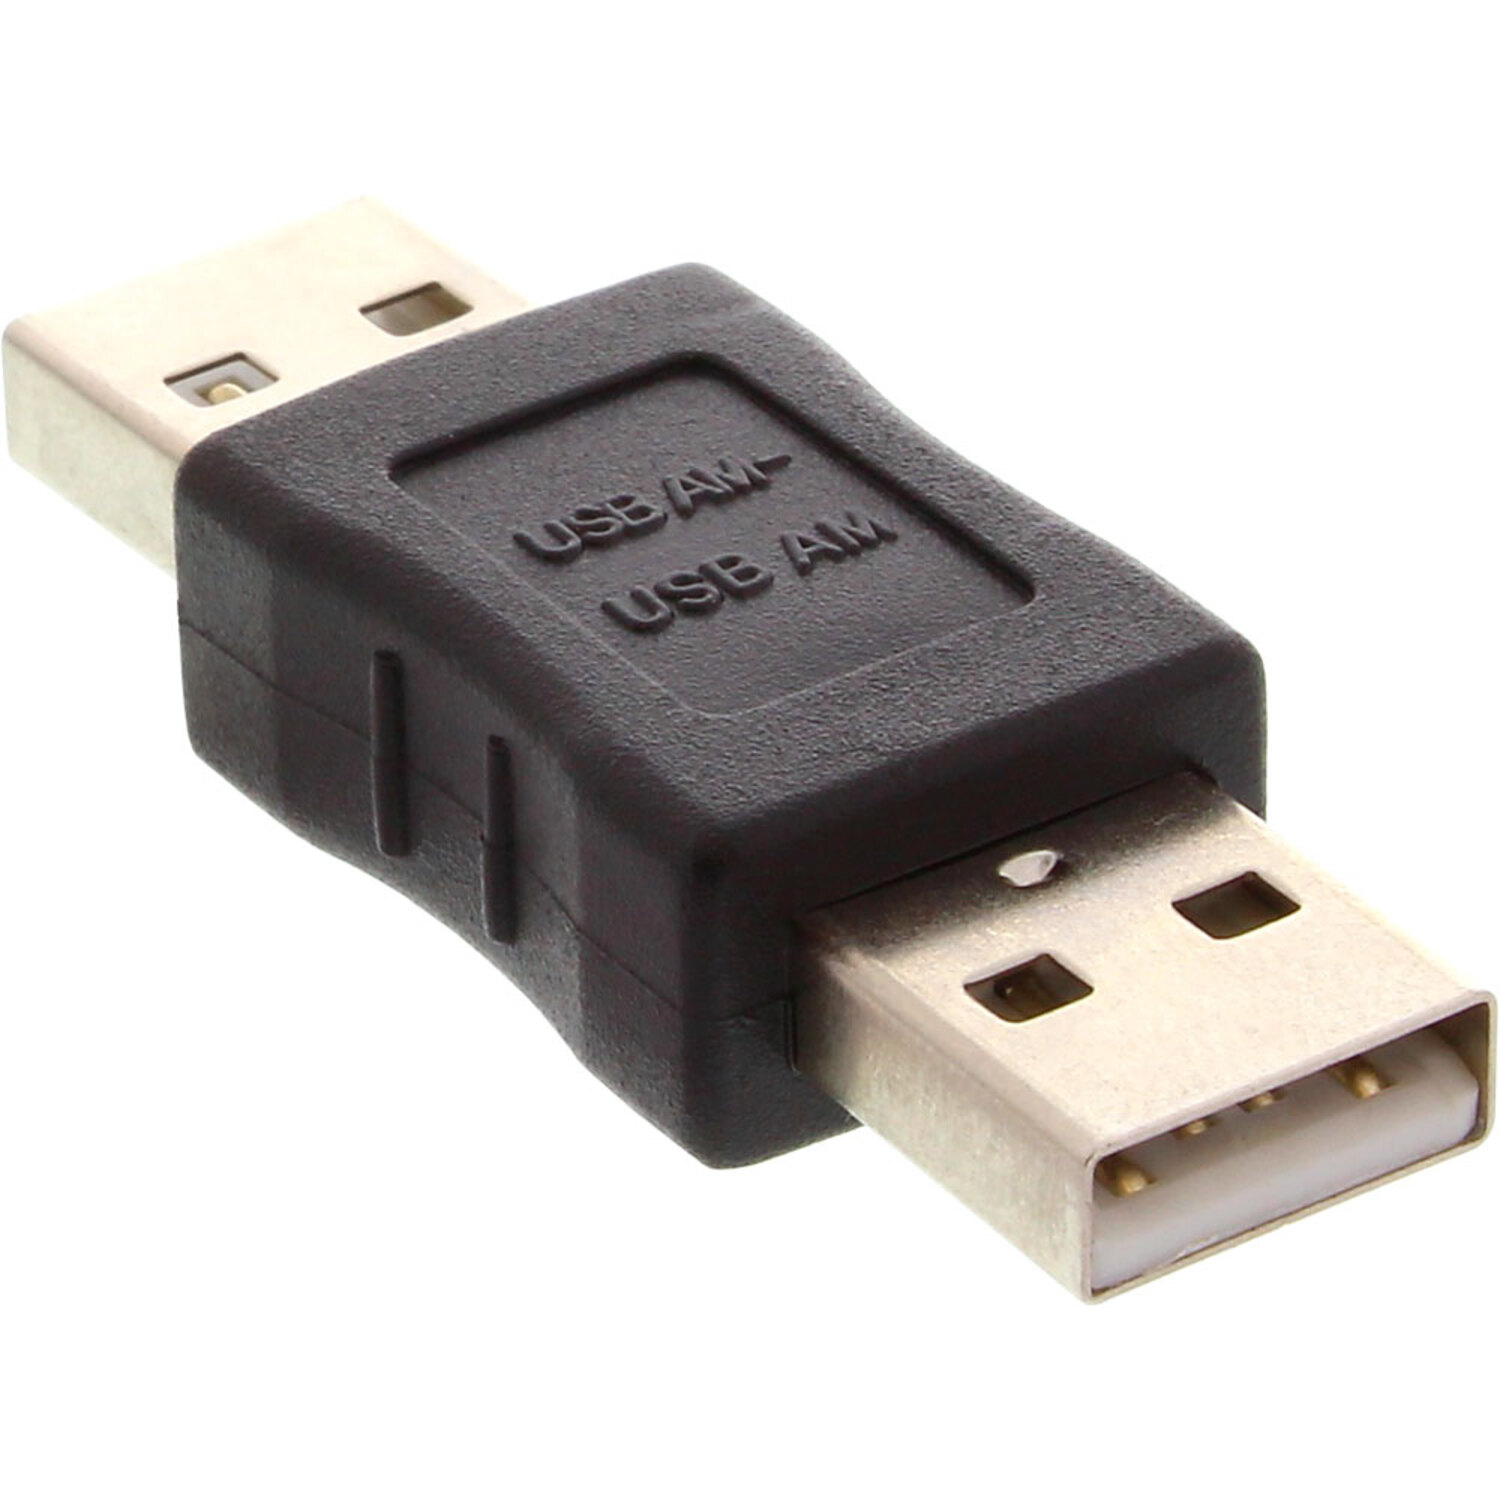 INLINE InLine® USB 2.0 2.0 auf 2.0 A Konverter Adapter, schwarz USB / Adapter, USB Adapter Stecker A